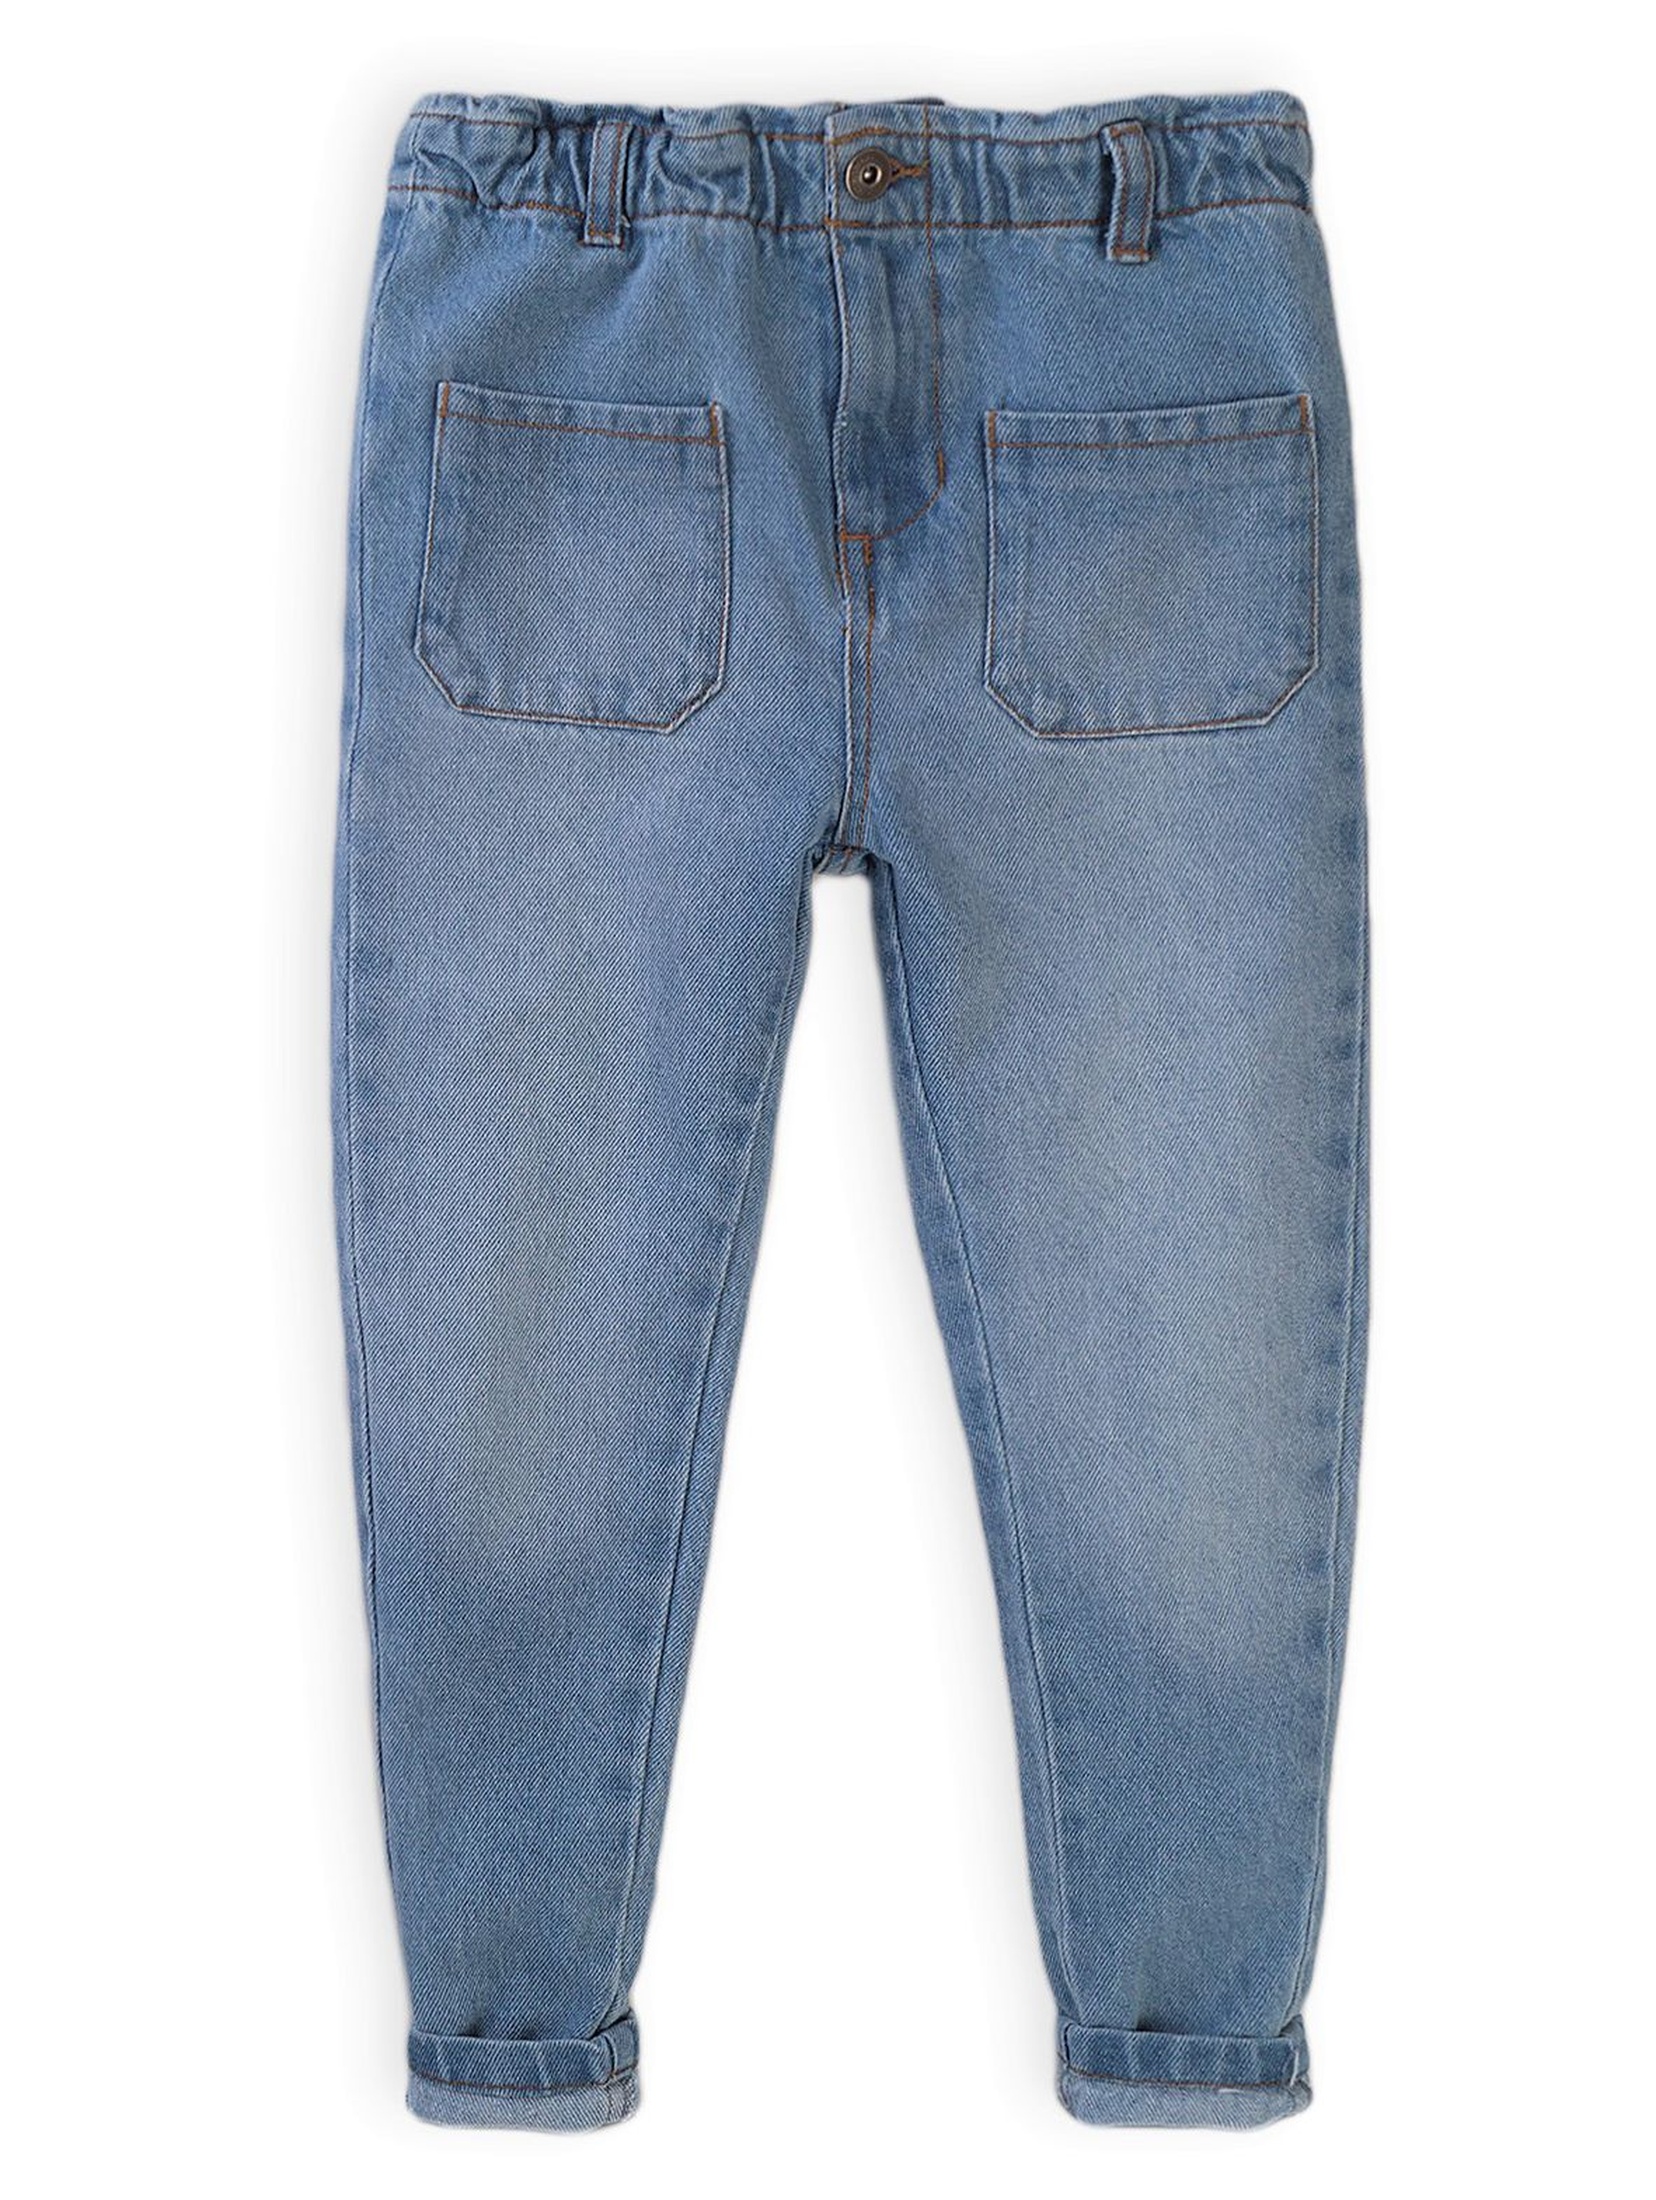 Spodnie dziewczęce jeansowe niebieskie